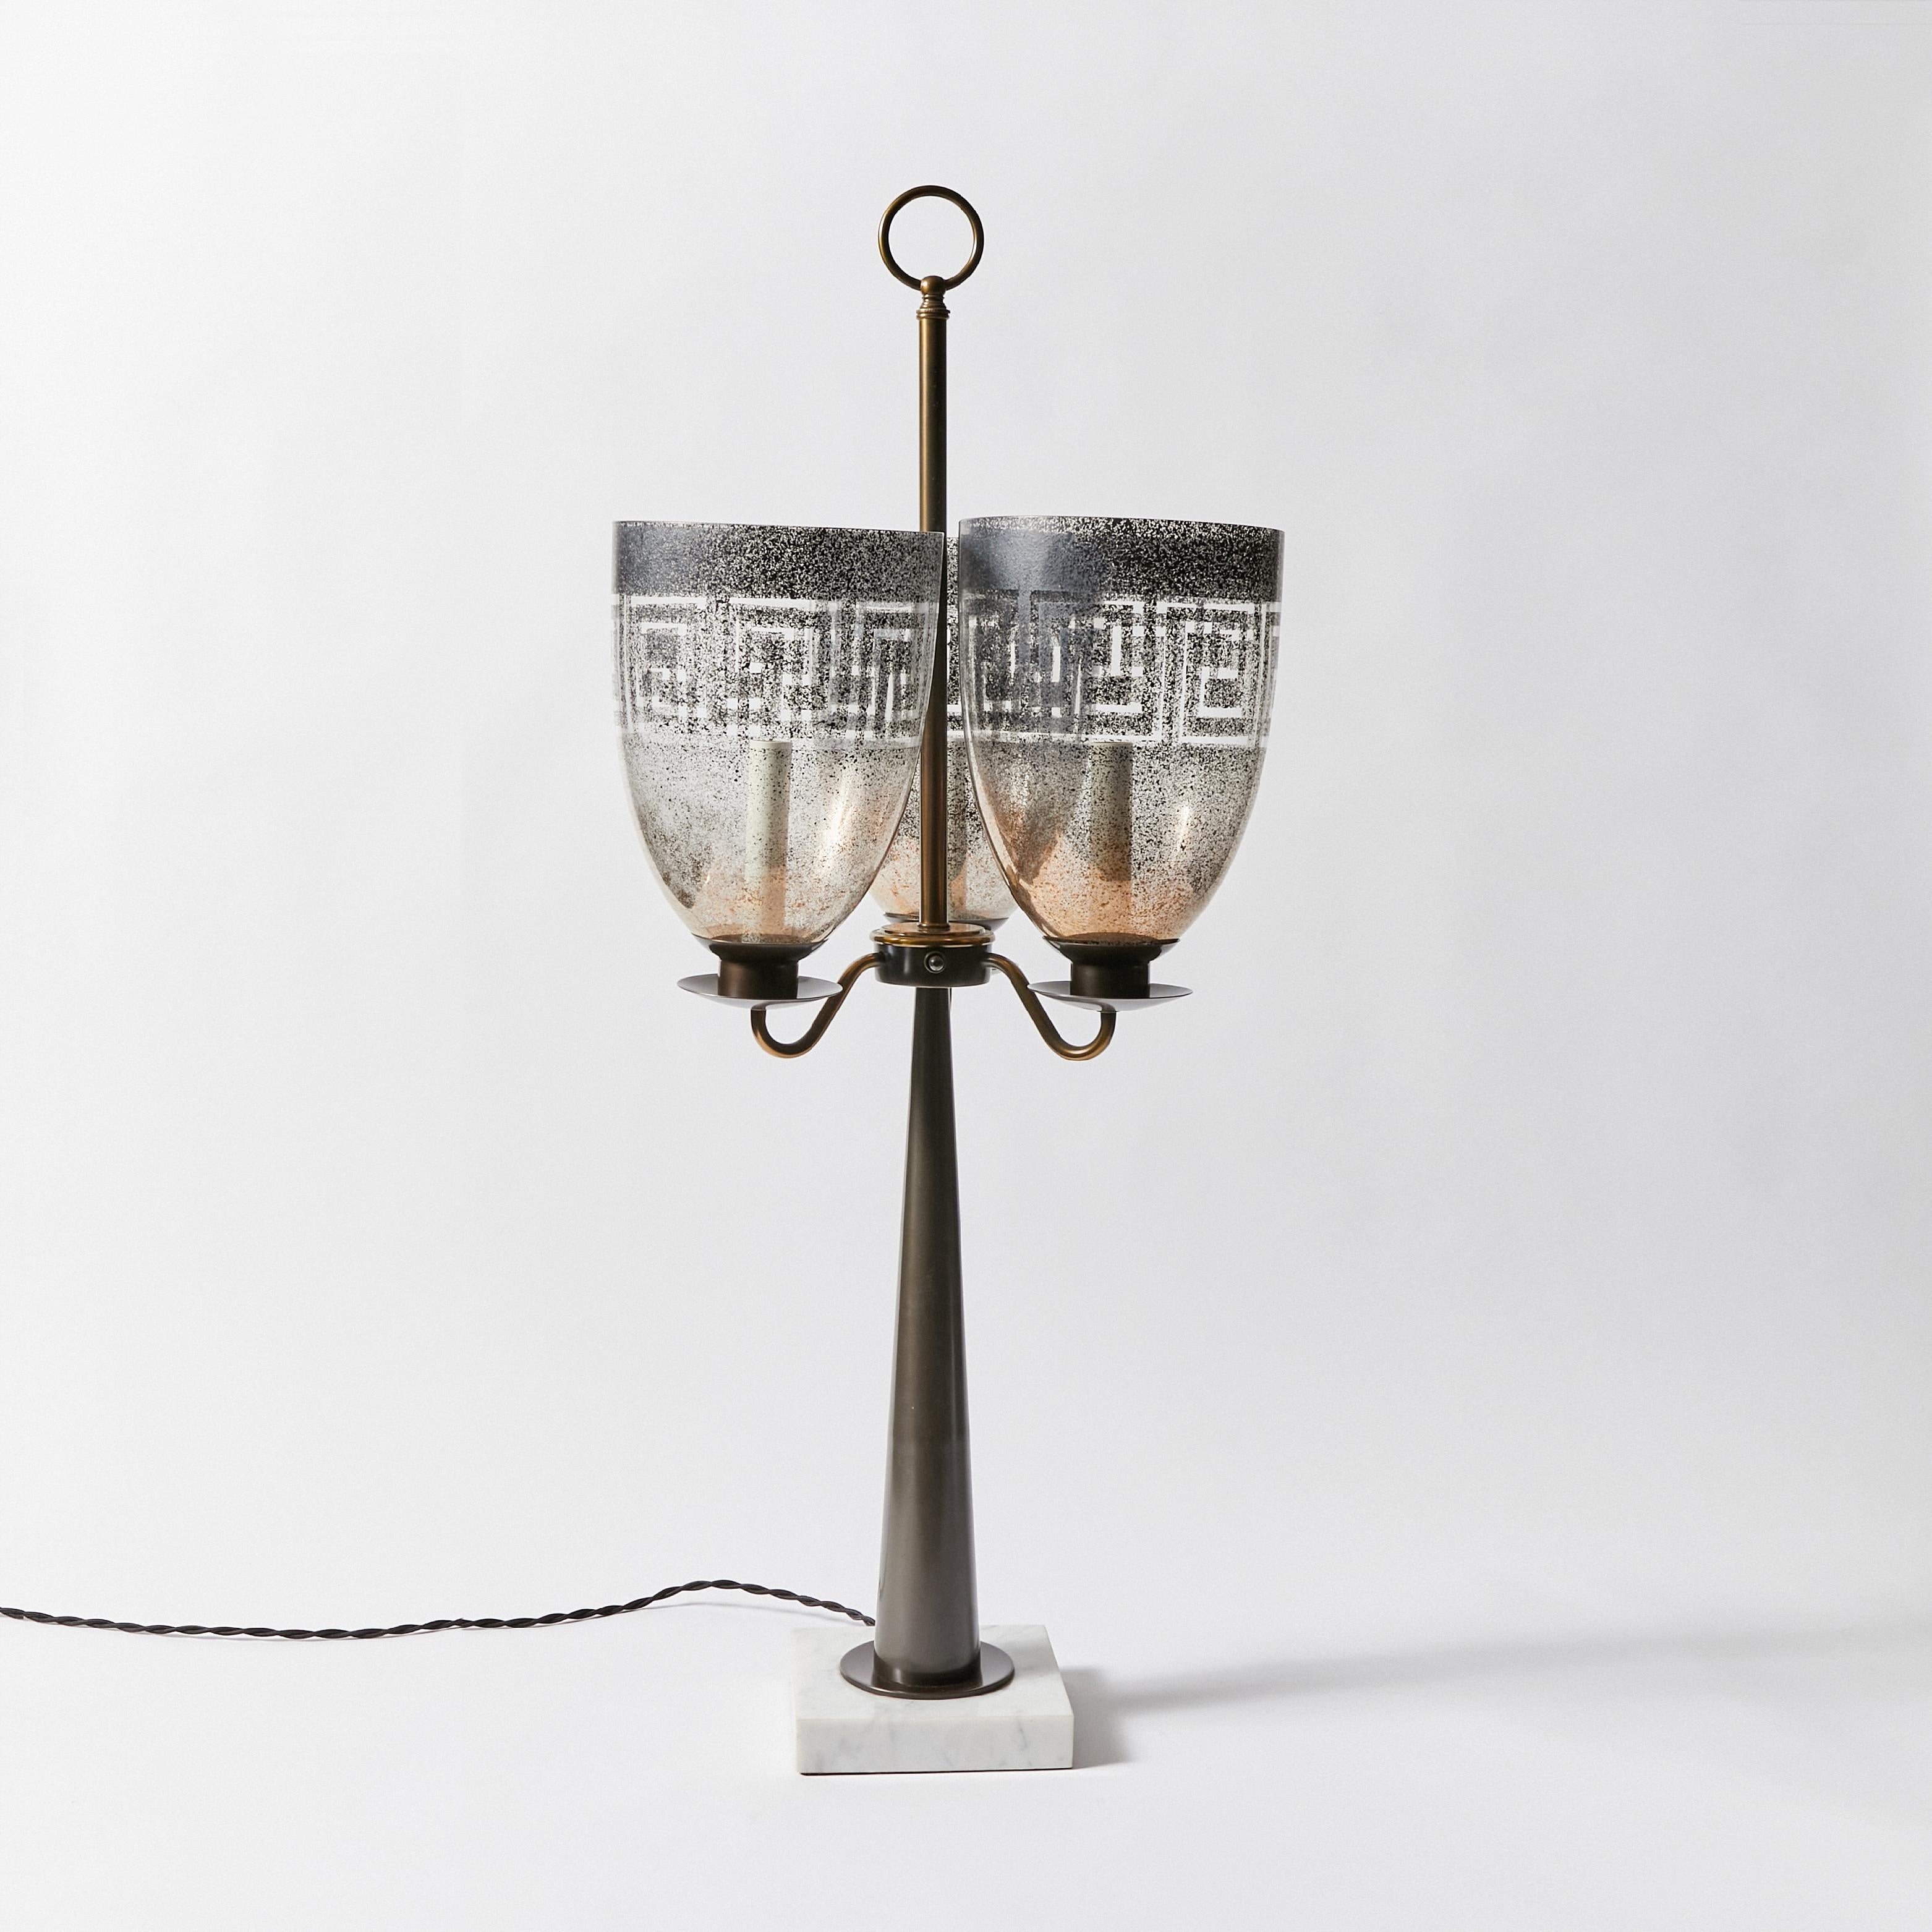 Lampe de table chandelier à triple abat-jour en forme d'ouragan, à la manière de Tommi Parzinger. Fabriqué par Stiffel. Cet article a été refini en bronze antique et recâblé avec un cordon en tissu tressé et de nouvelles pièces. Cette lampe ne